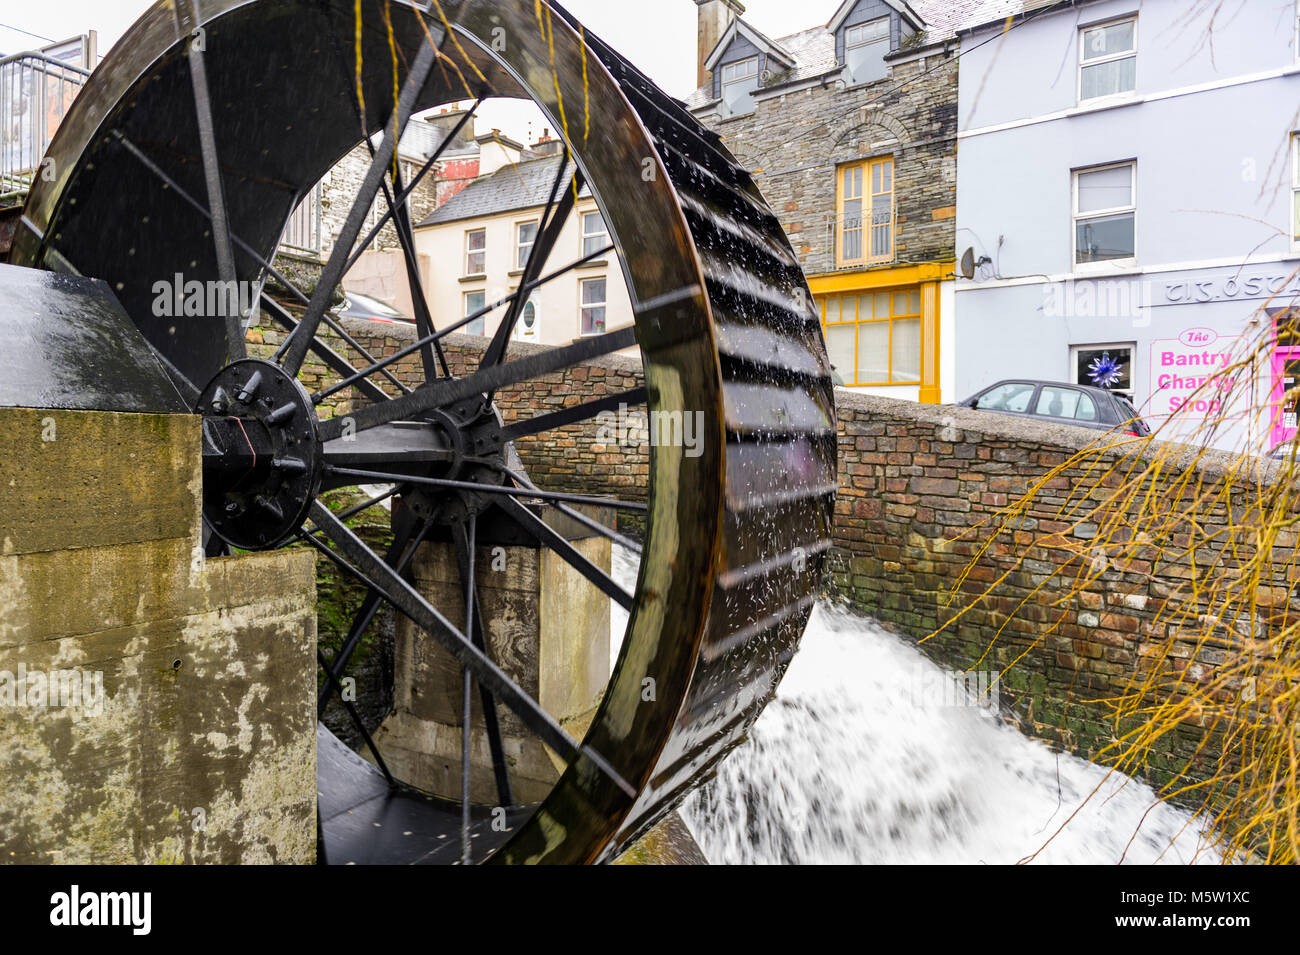 Historische Wasserrad oder Mühlrad außerhalb Bantry Bibliothek, Bantry, County Cork, Irland. Stockfoto